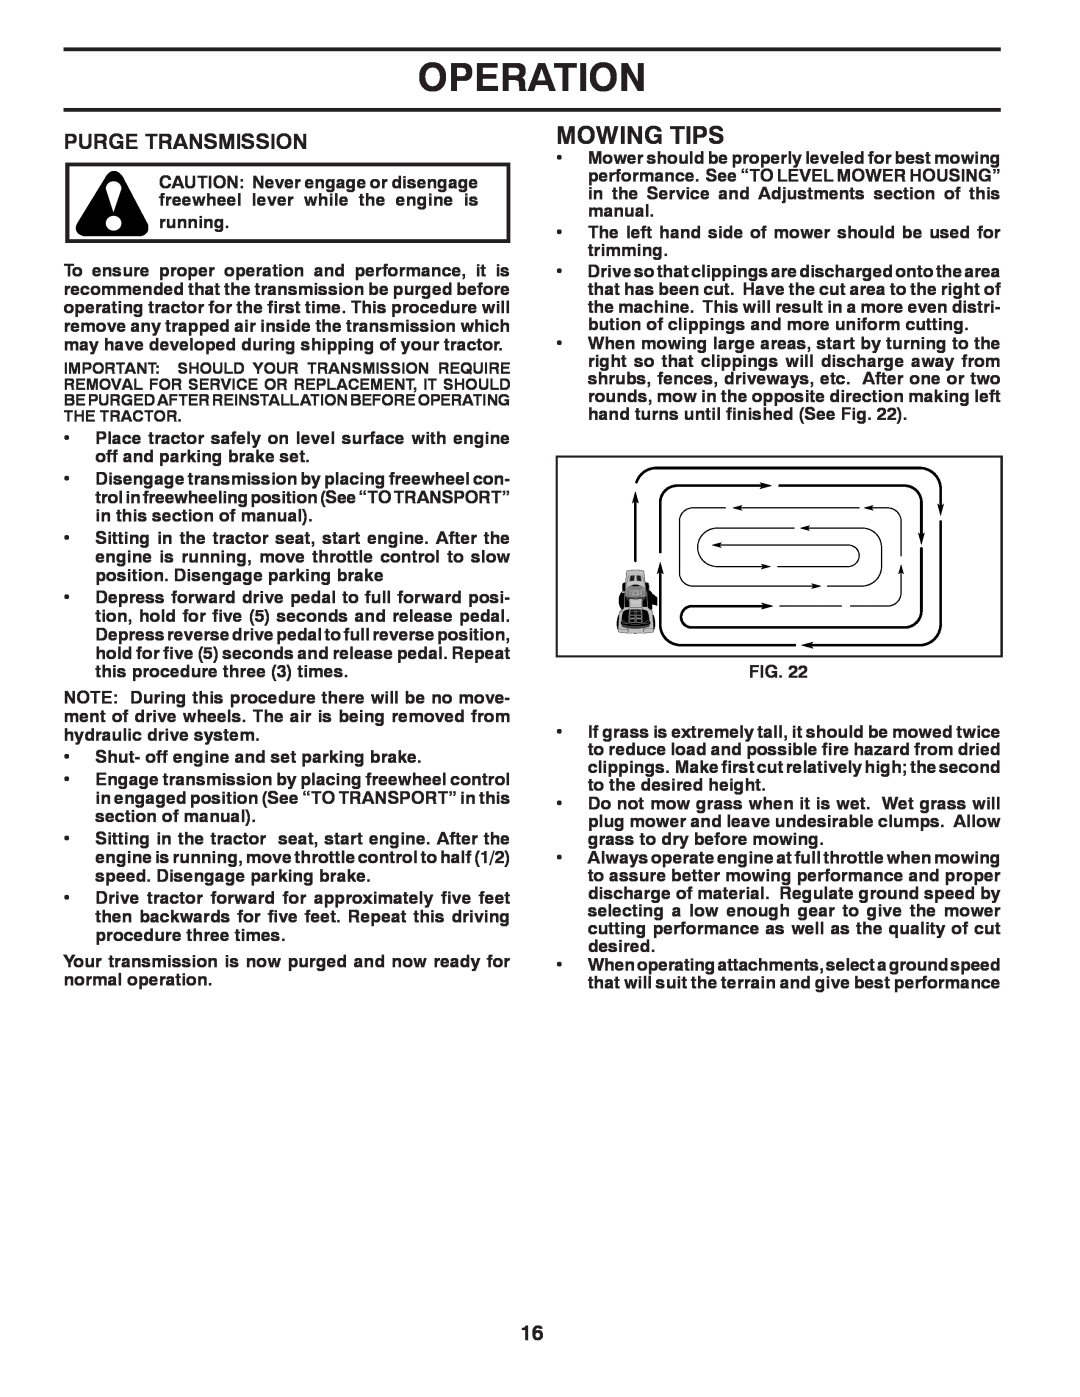 Poulan PB22H54BF manual Mowing Tips, Purge Transmission, Operation 